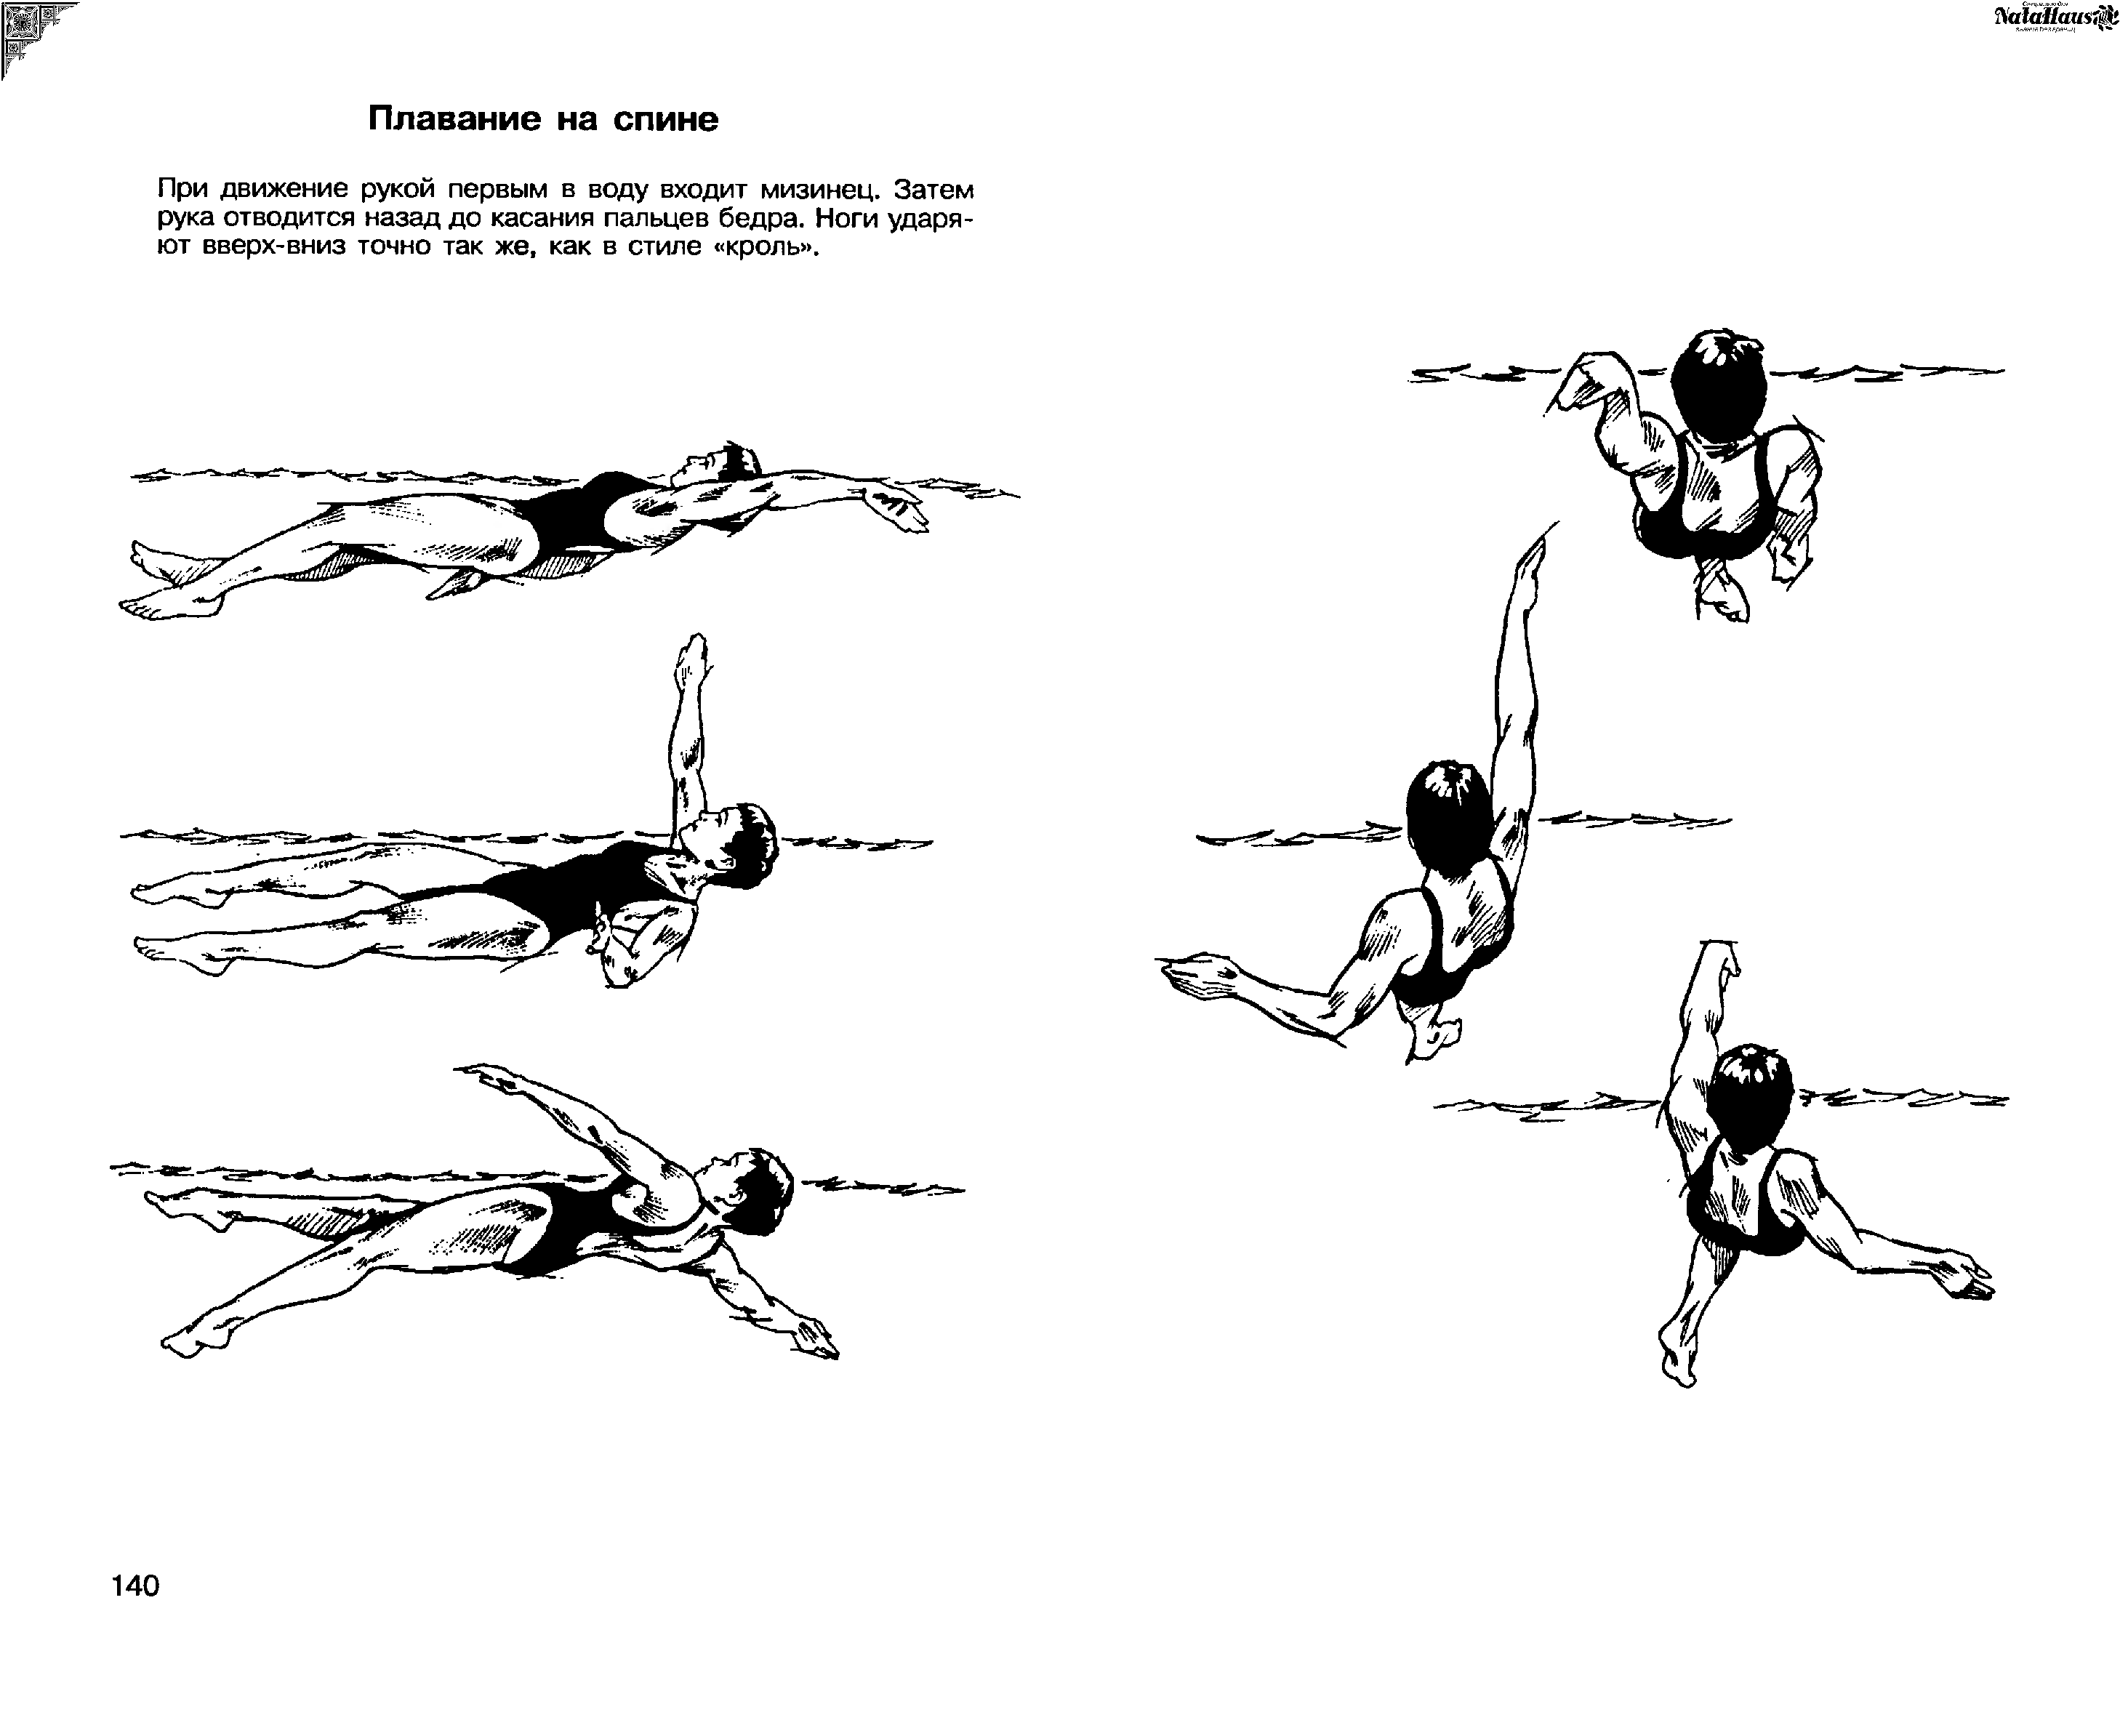 Обучение плаванию кроль на спине. Техники плавания Кроль на спине. Стиль плавания Кроль на спине. Кроль на спине техника плавания. Техника плавания кролем на спине движение ног.